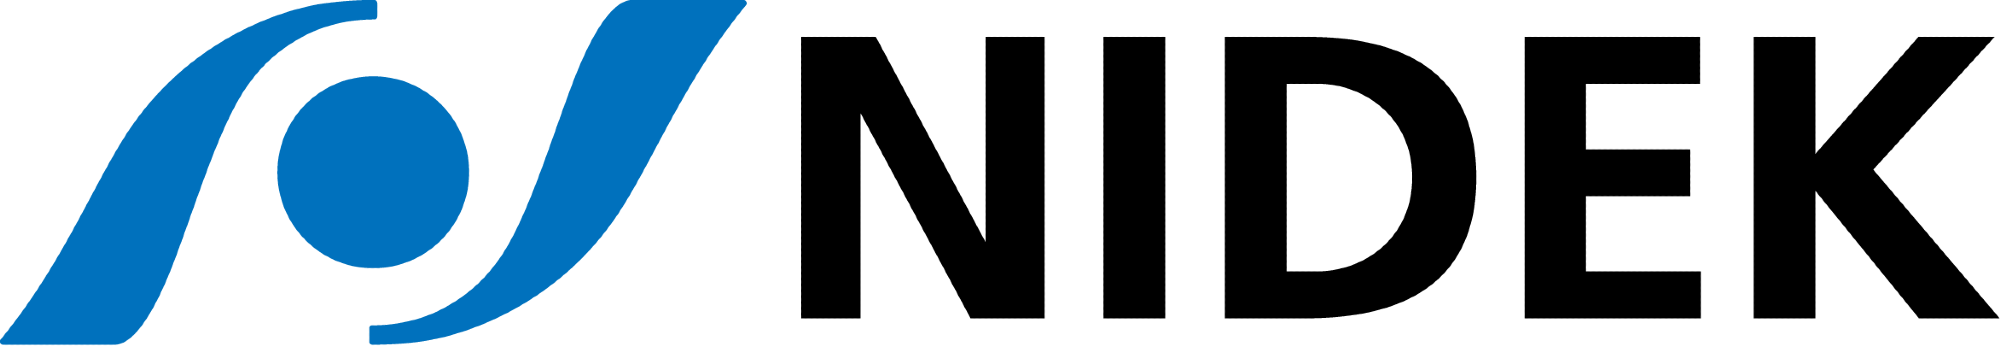 NIDEK CO., LTD. logo.